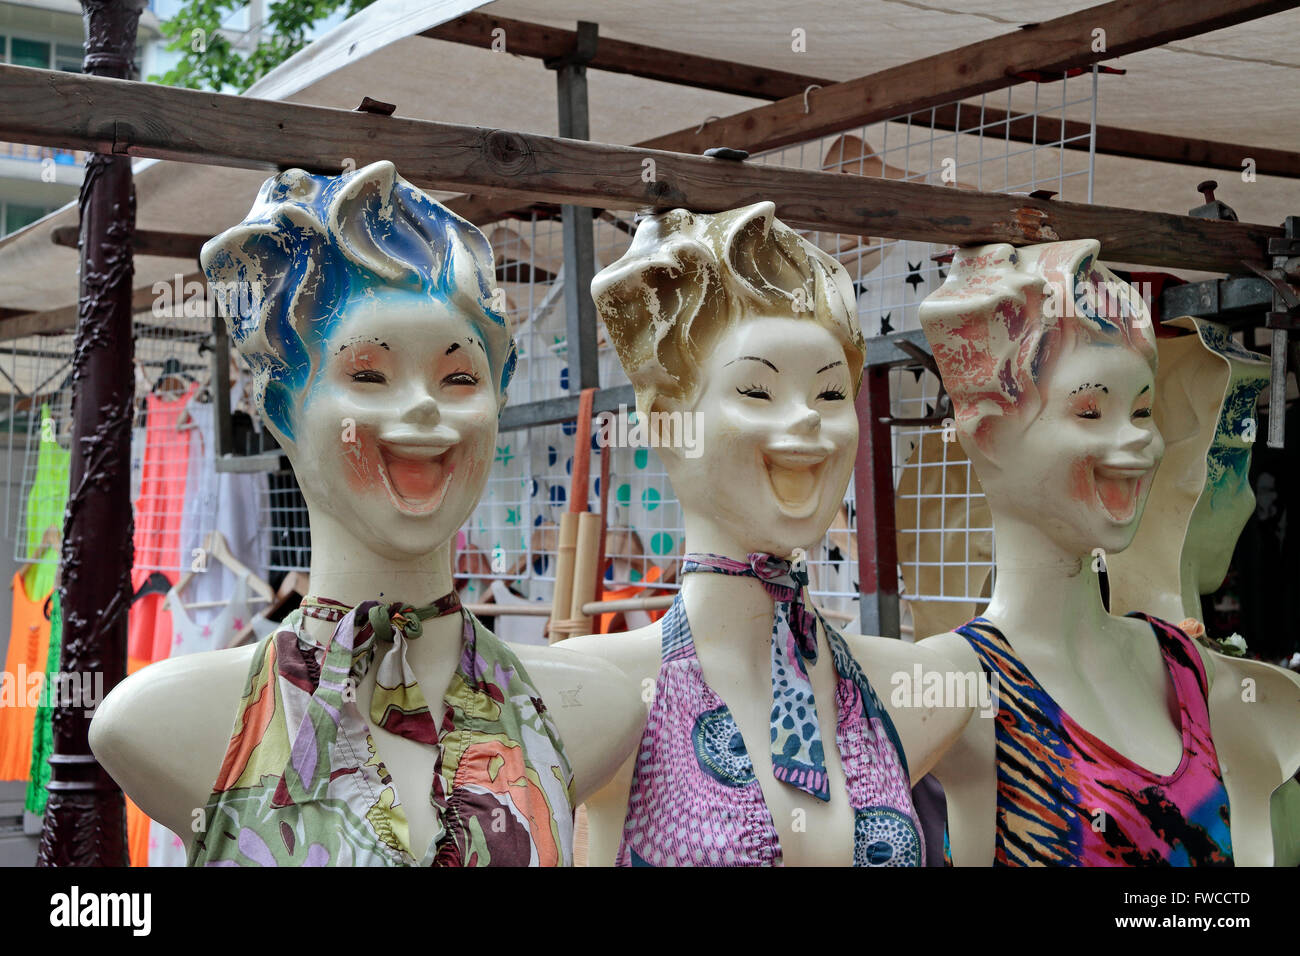 Drei gruselig aussehende Puppe Gesichter auf einem Markt stall in Amsterdam, Niederlande. Stockfoto